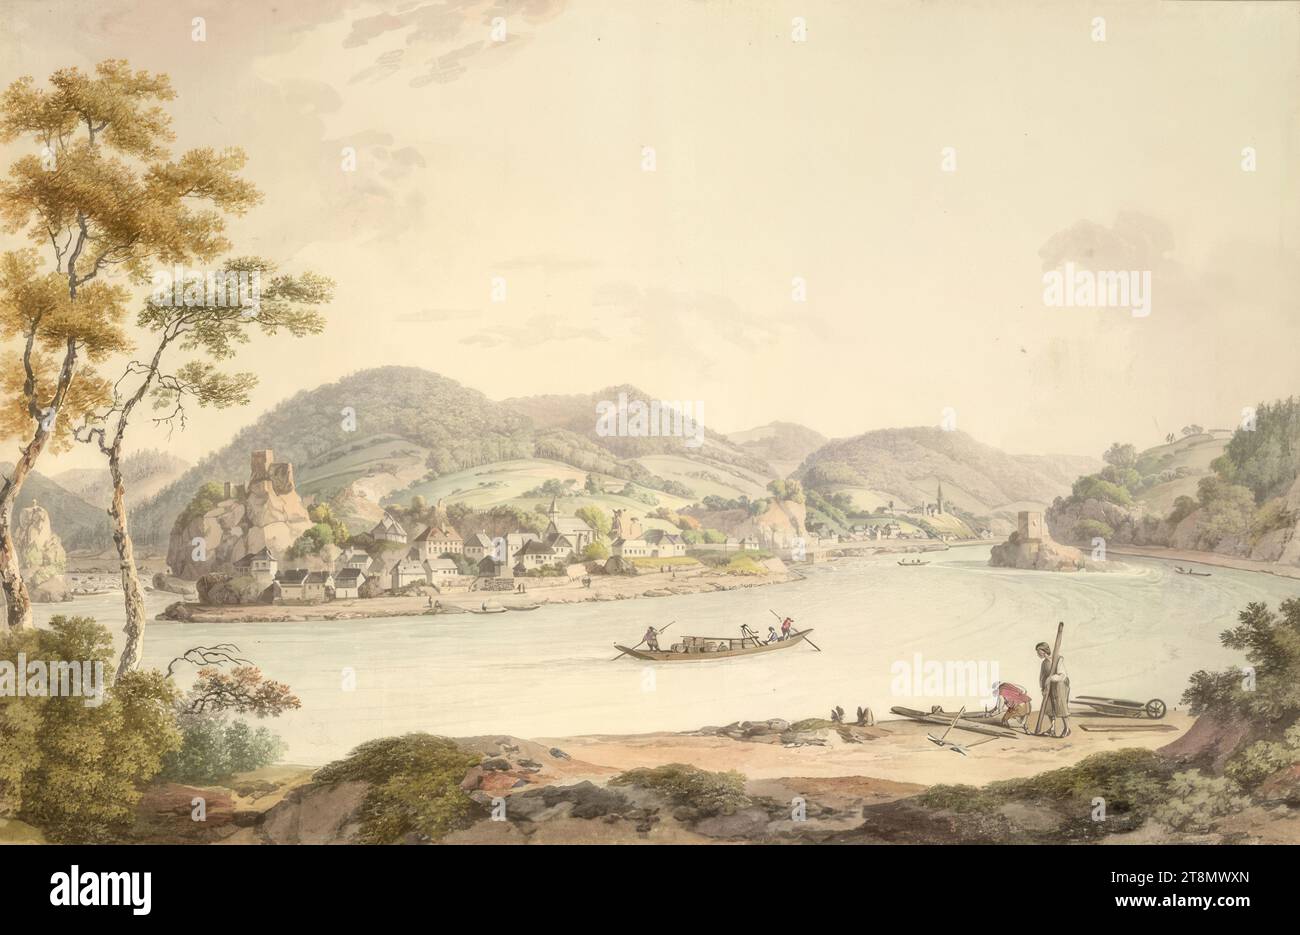 Danube strudel, vue d'ensemble, Ferdinand Runk (Freiburg im Breisgau 1764 - 1834 Vienne), 1790-1810, dessin, aquarelle, 26,9 x 41,2 cm, l. et Duc Albert de Saxe-Teschen Banque D'Images